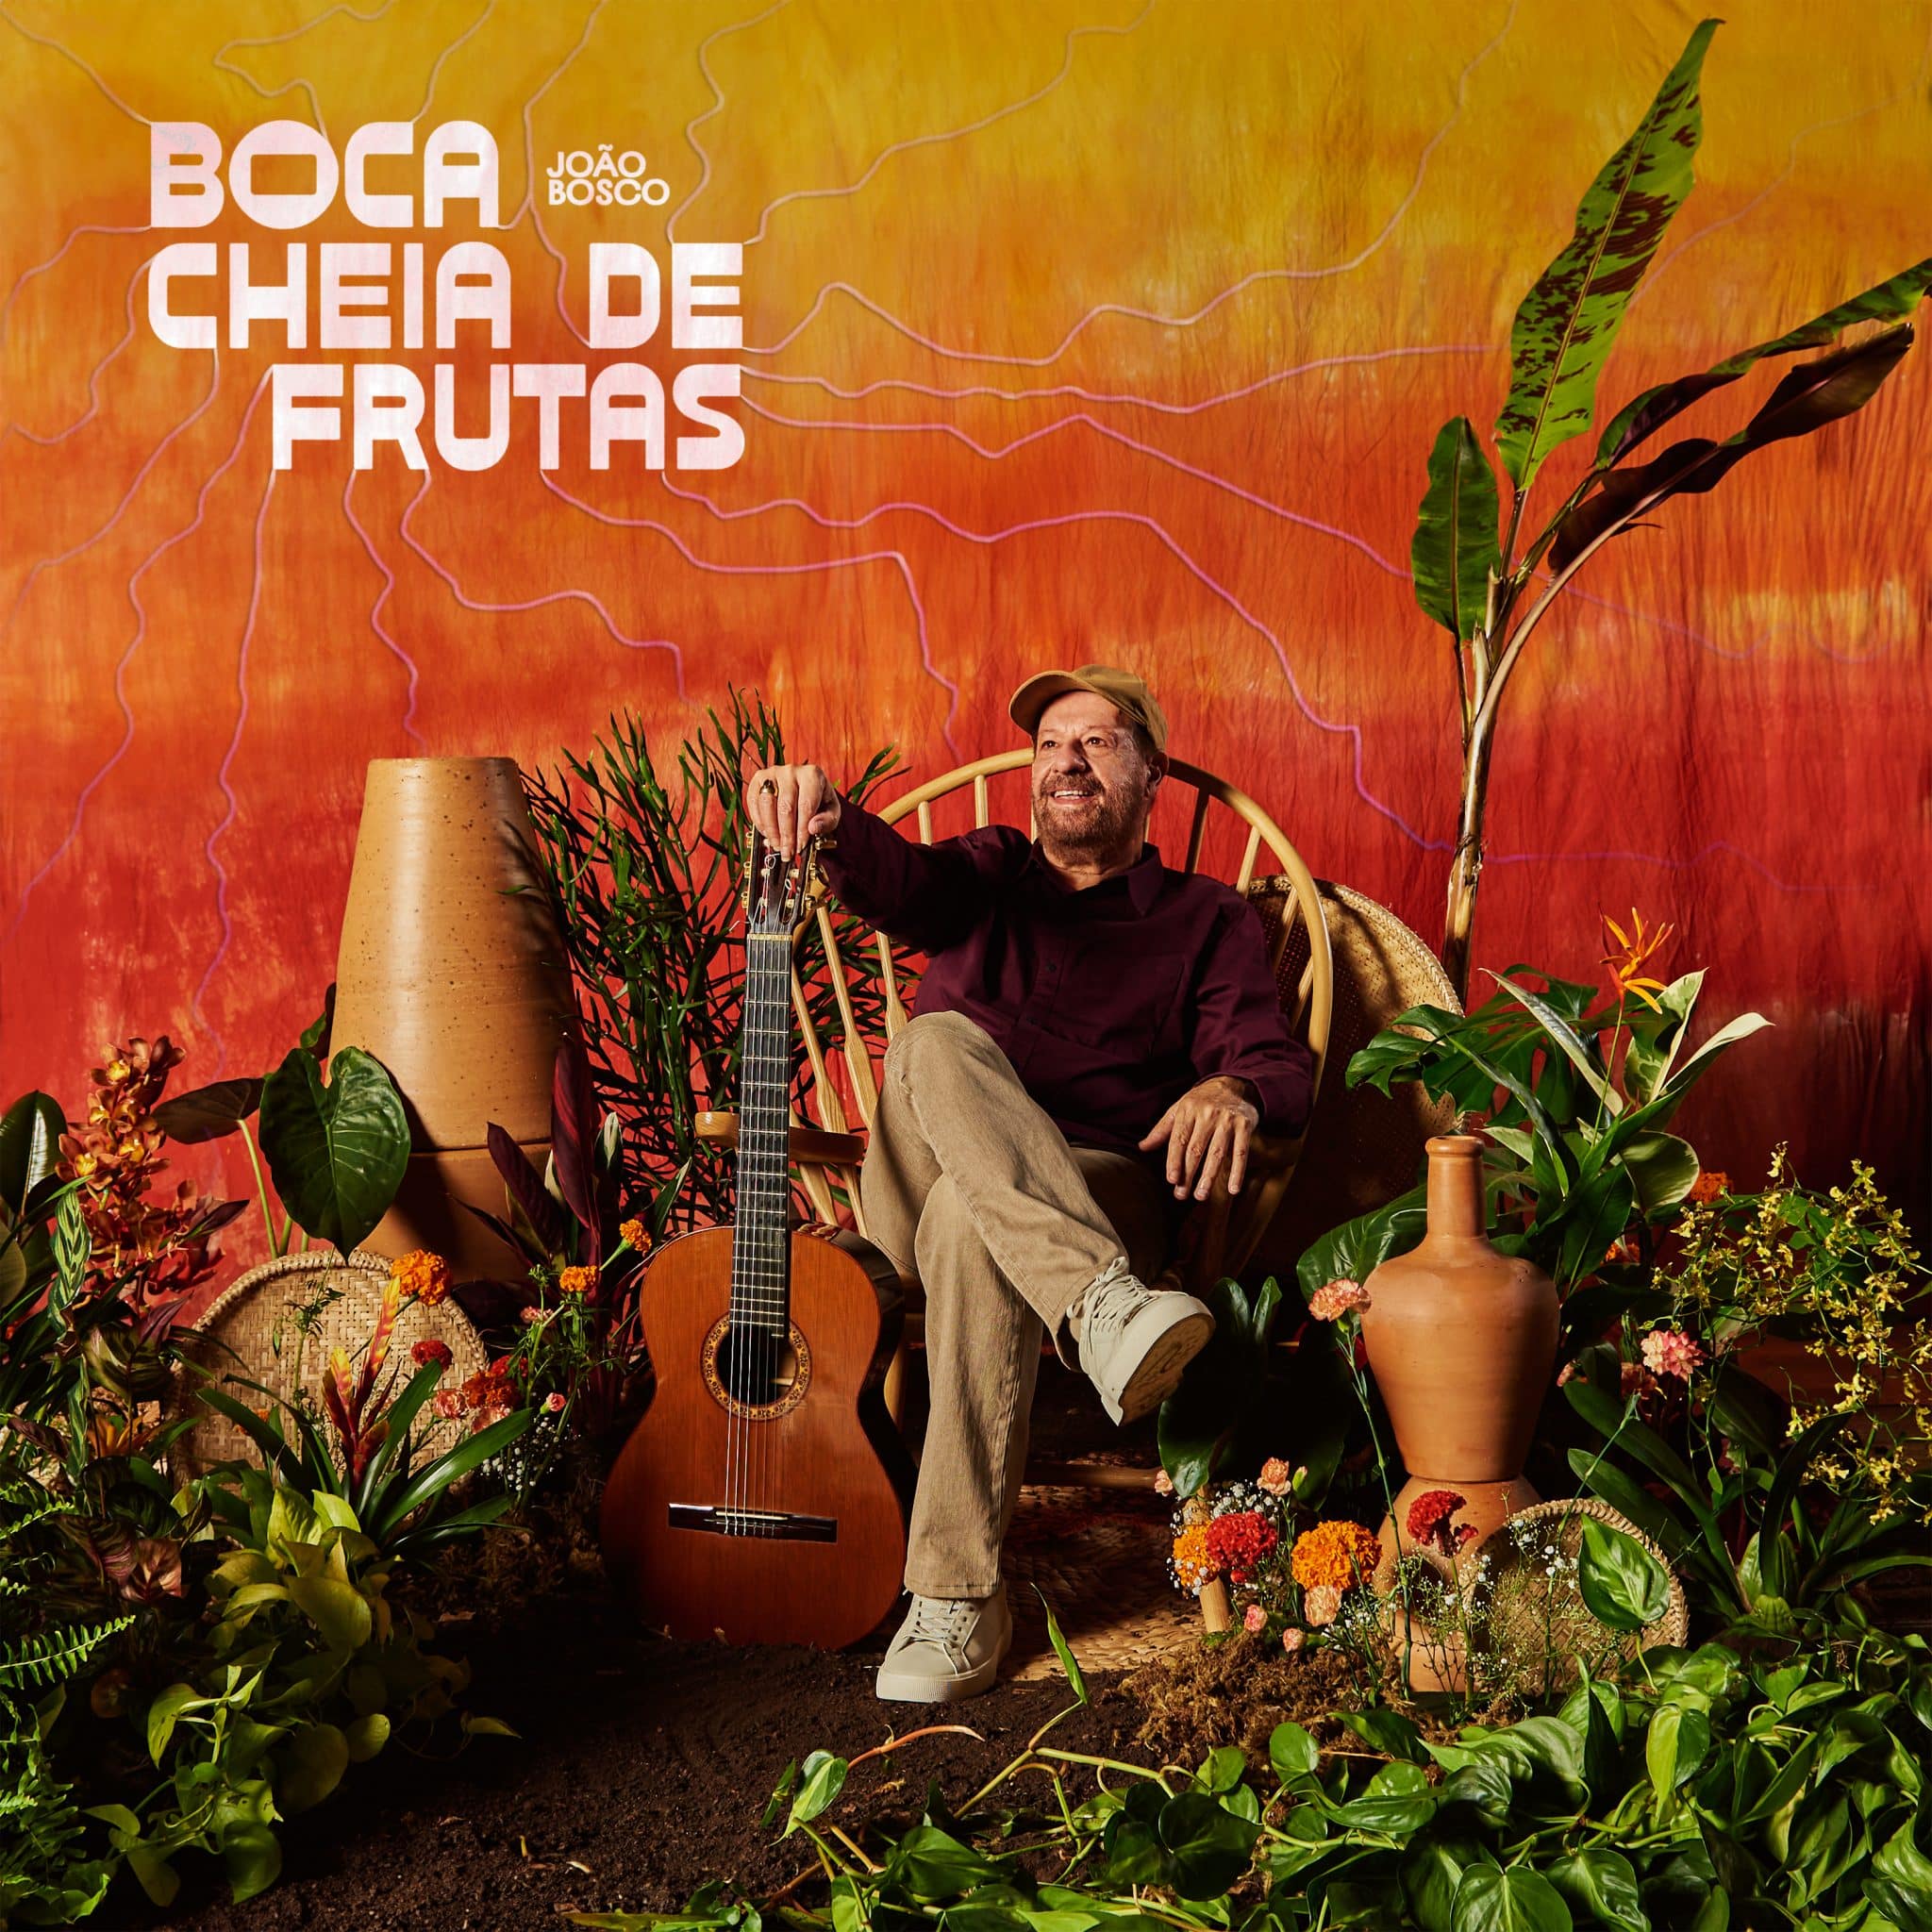 revistaprosaversoearte.com - João Bosco lança o álbum de inéditas 'Boca cheia de frutas'